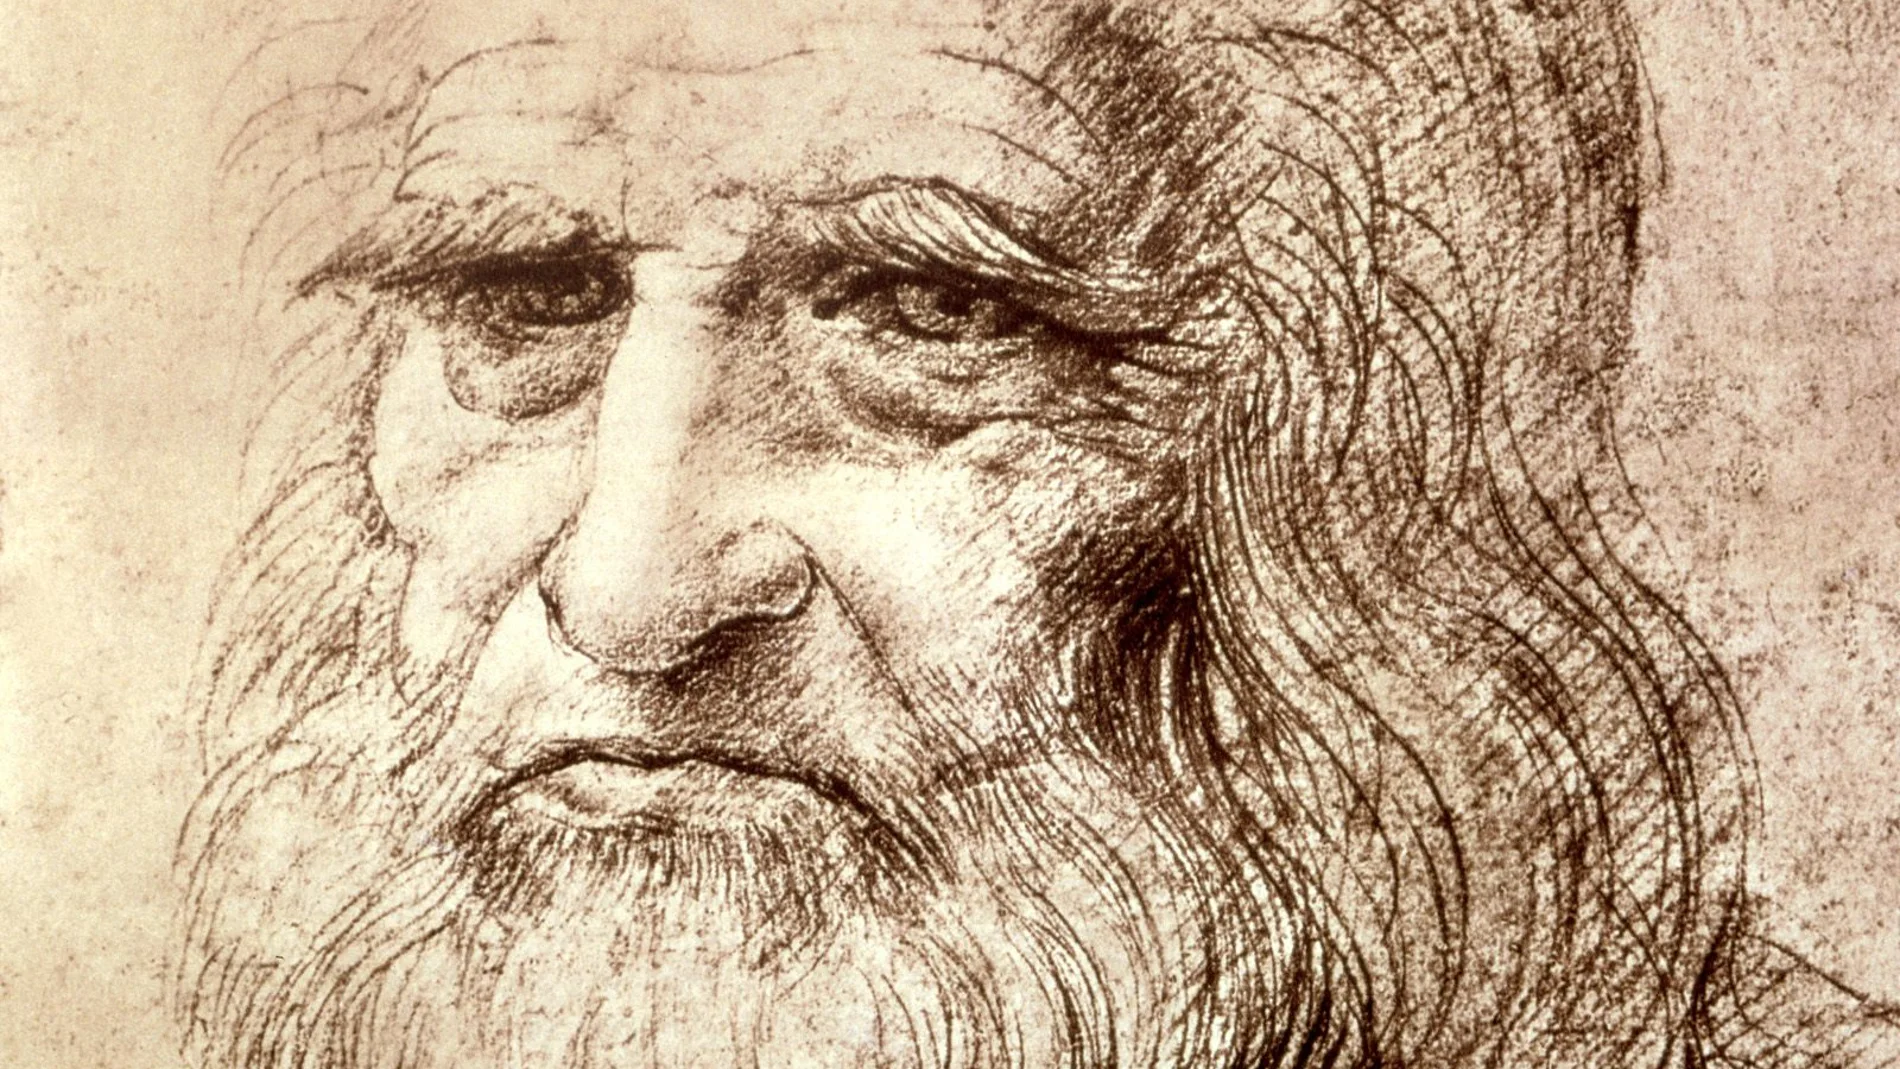 Leonardo da Vinci falleció el 2 de mayo de 1519